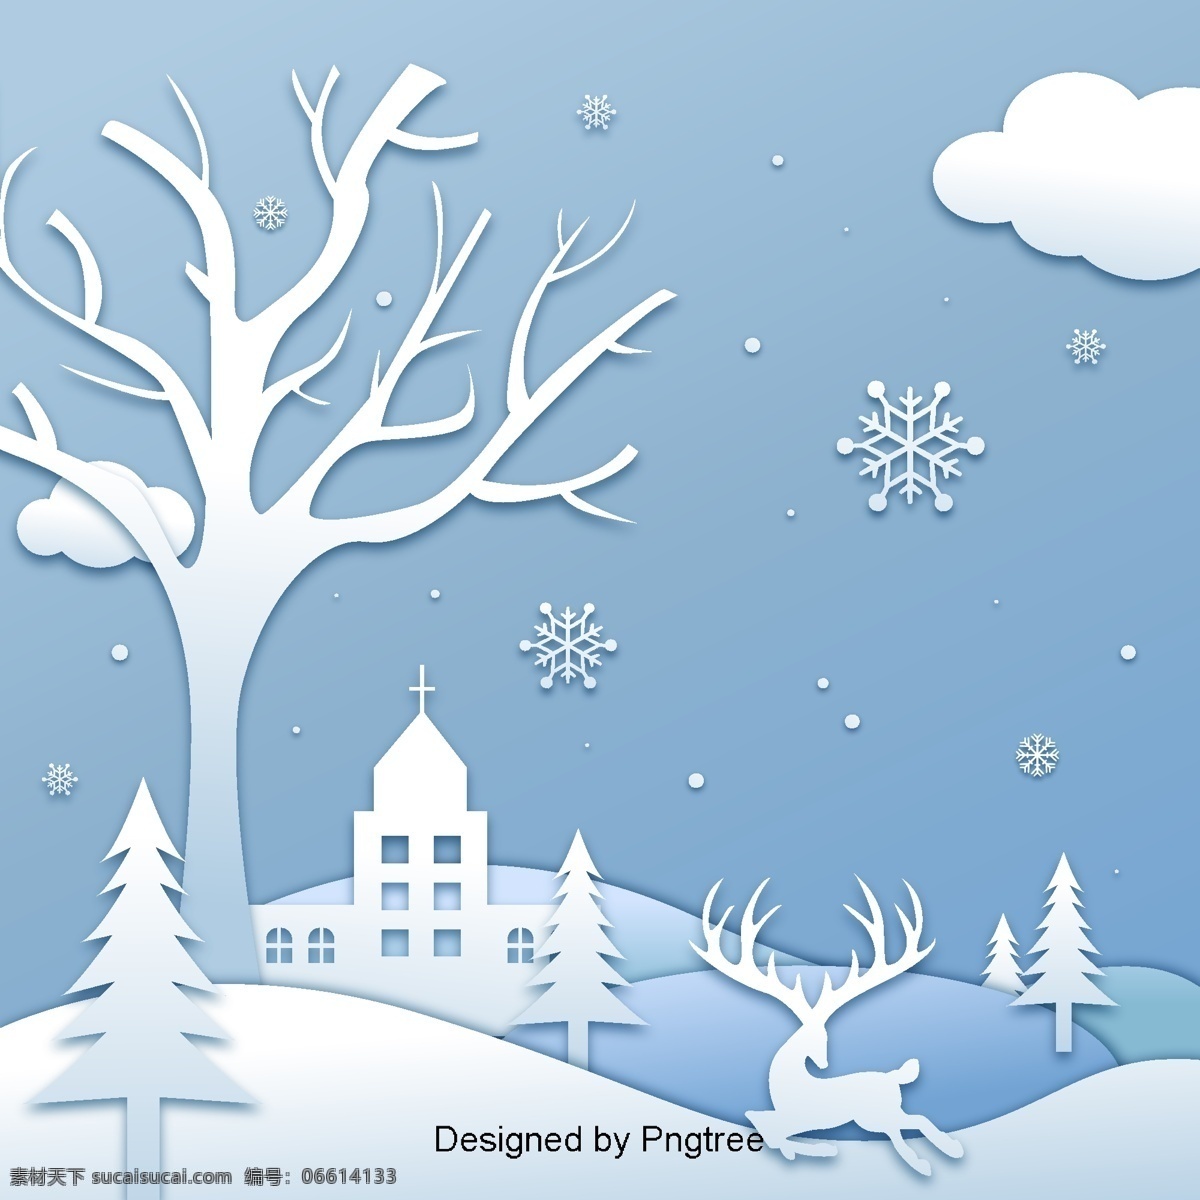 蓝色 驼鹿 剪纸艺术 蓝绿色 简单 阳光 麋鹿 鹿 冬天 圣诞节 雪 场景 向量 插图 背景